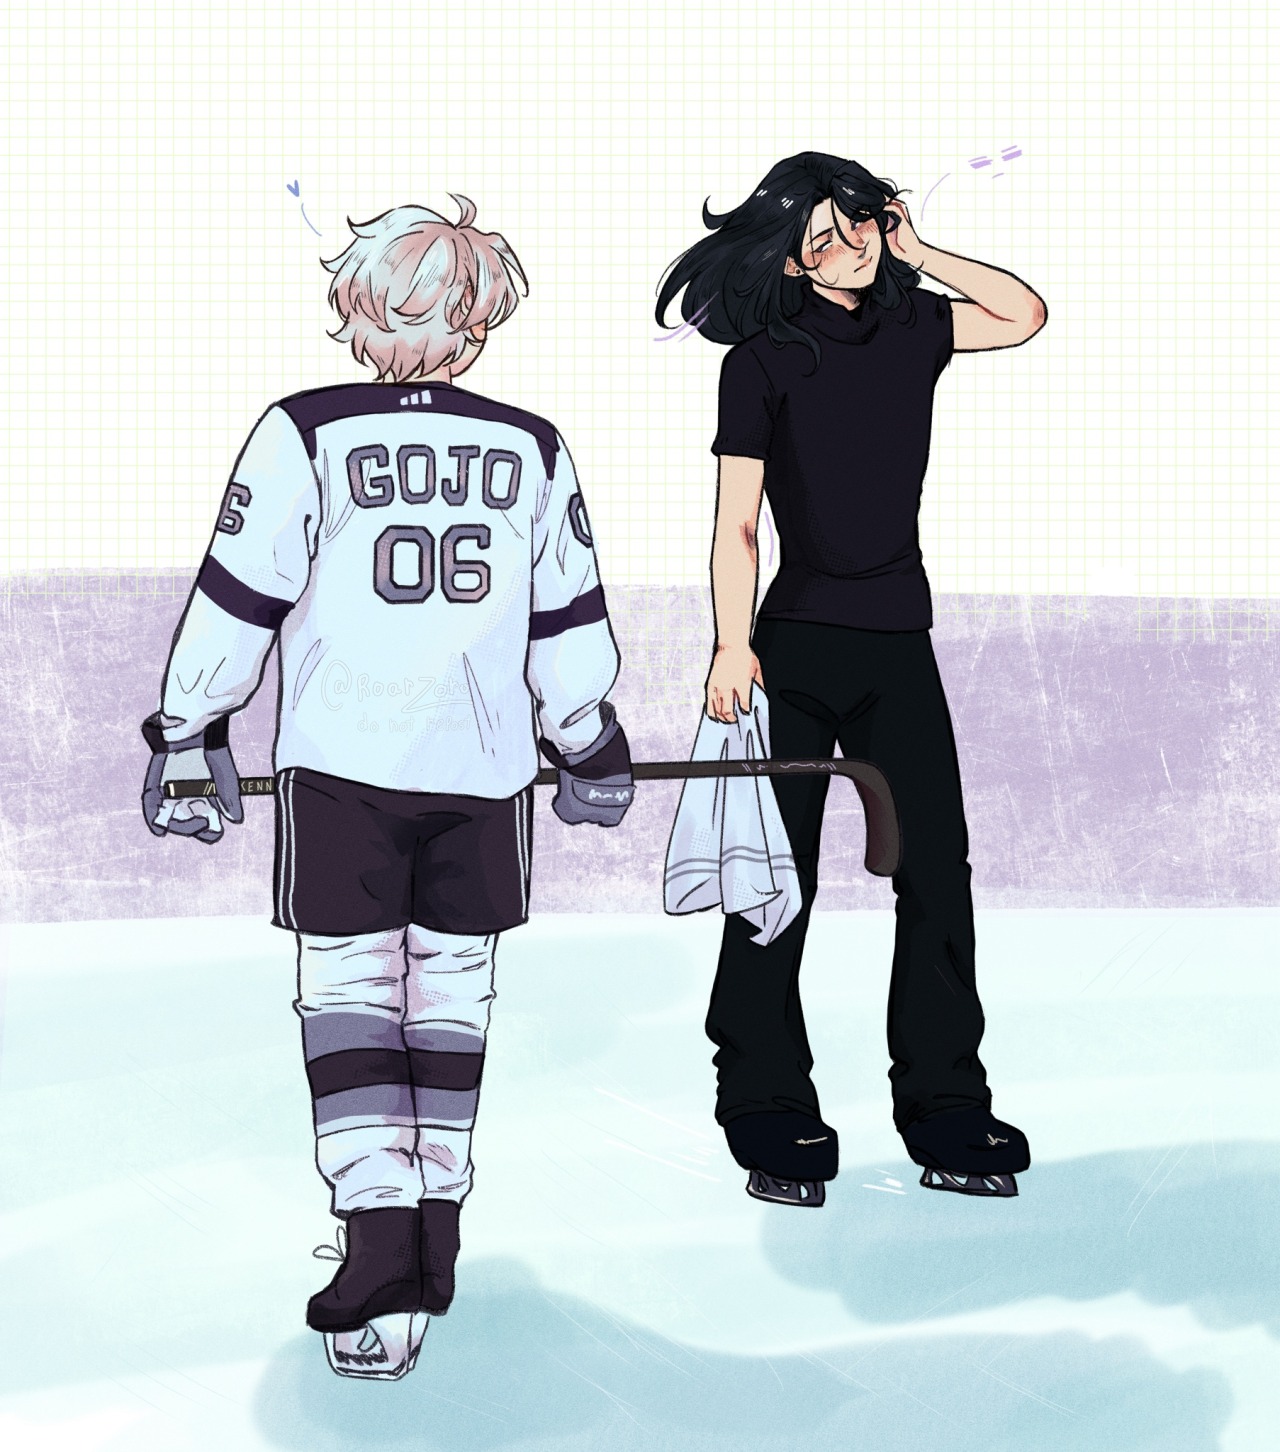 suguru getou and satori gojo skating on an ice rink, gojo is staring at getou as he skates